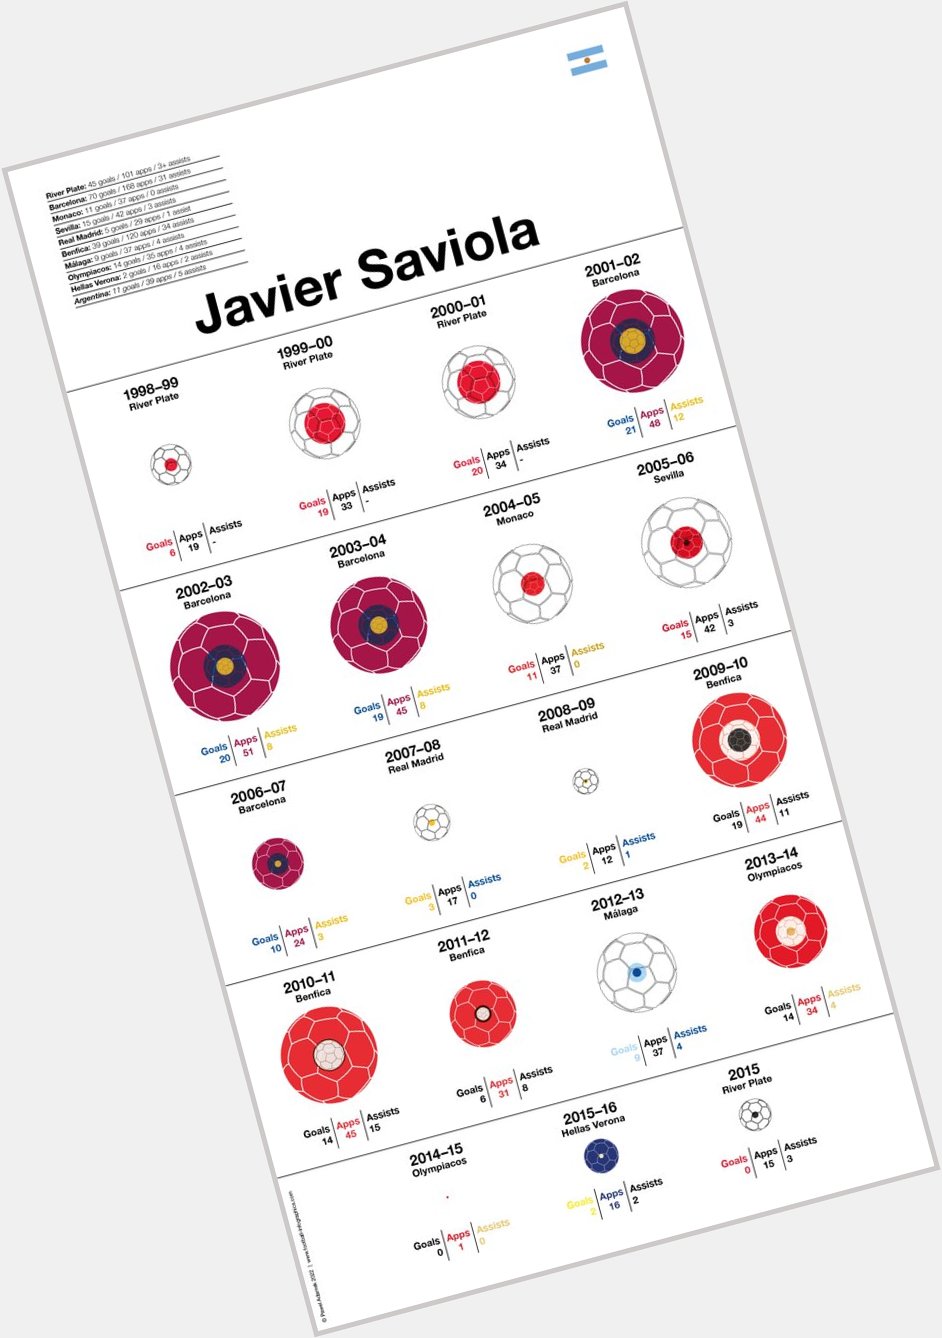 Happy Birthday to Javier Saviola!         